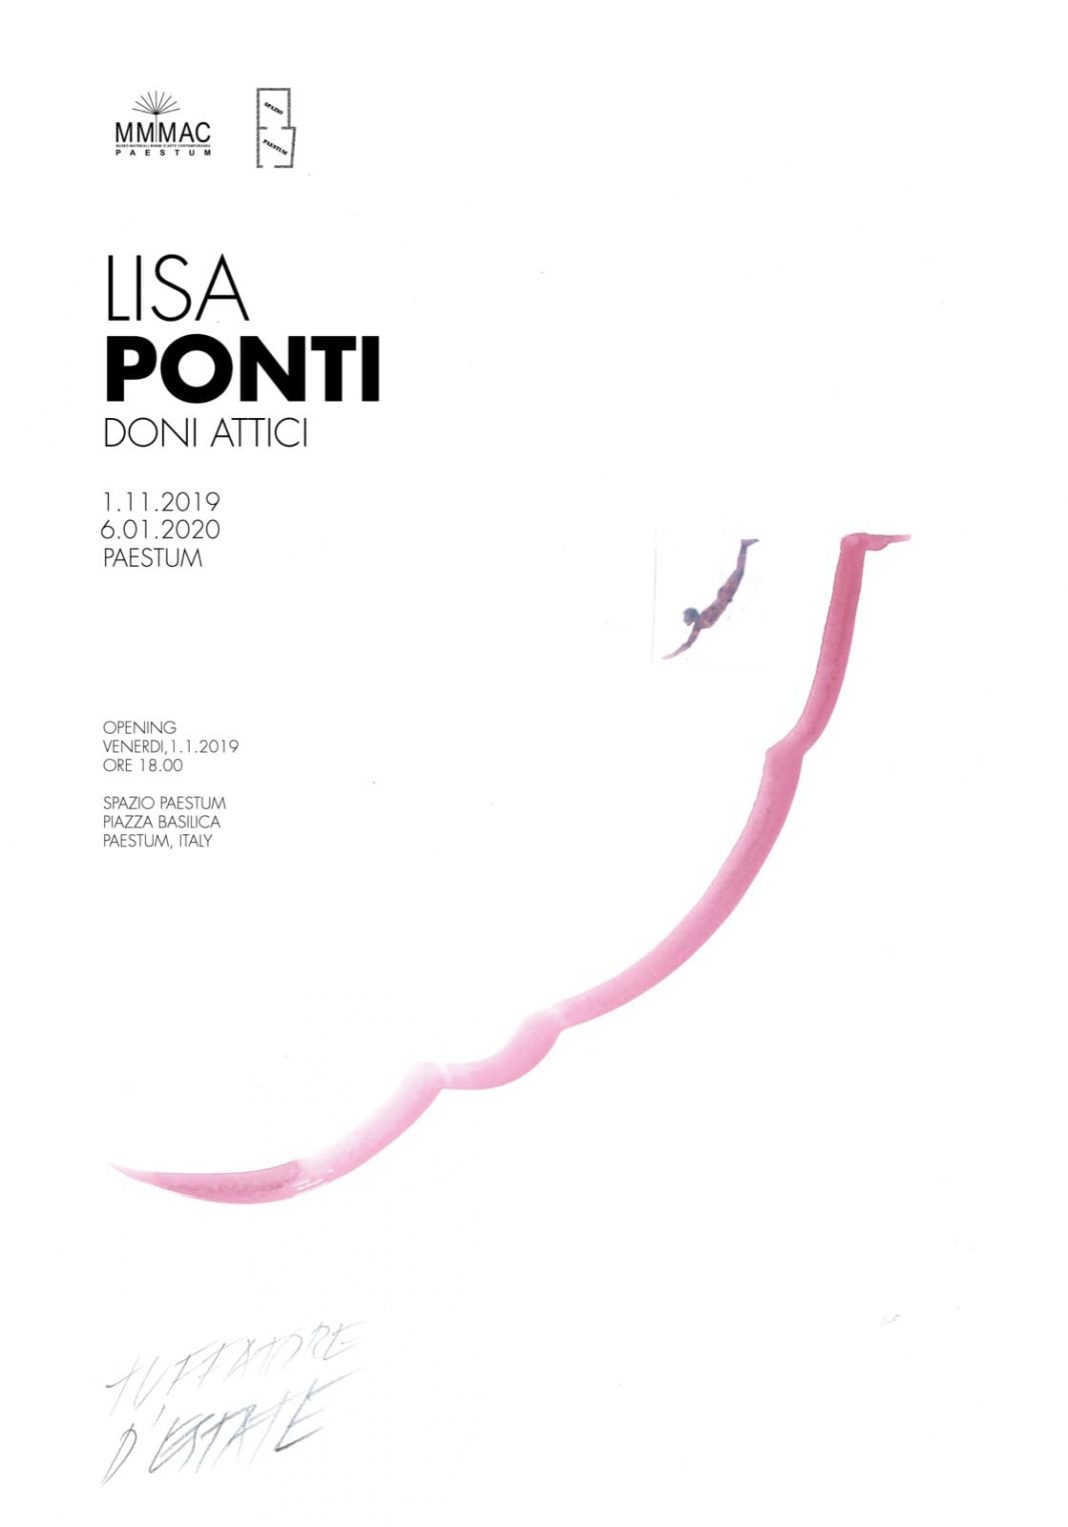 Lisa Ponti – Doni atticihttps://www.exibart.com/repository/media/2019/10/IMG-20191028-WA0011-1068x1527.jpg